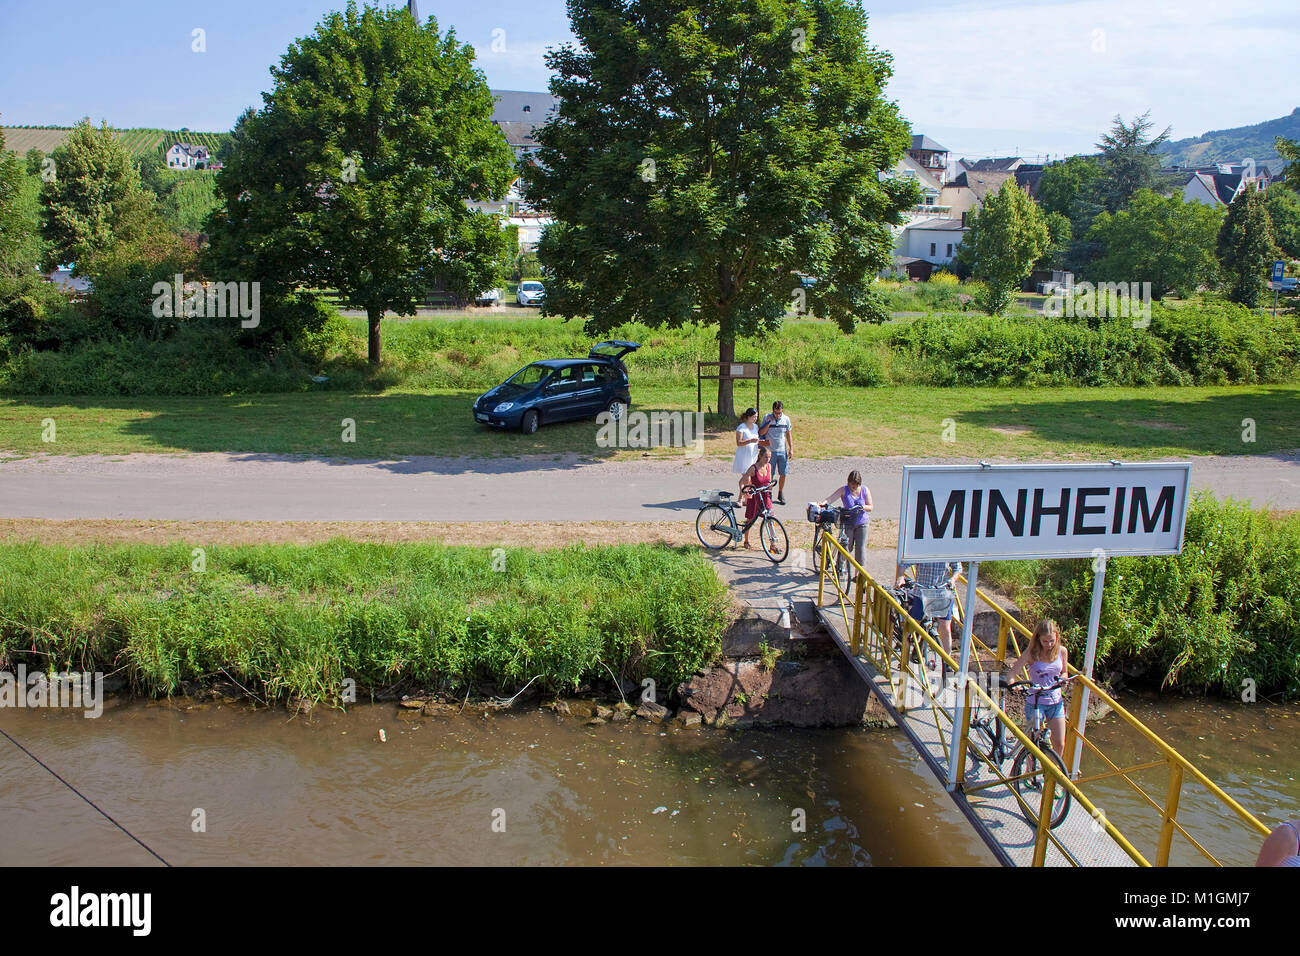 Los ciclistas en régimen de internado en embarcadero para barcos de excursión,Minheim, río Mosela, Renania-Palatinado, Alemania, Europa Foto de stock